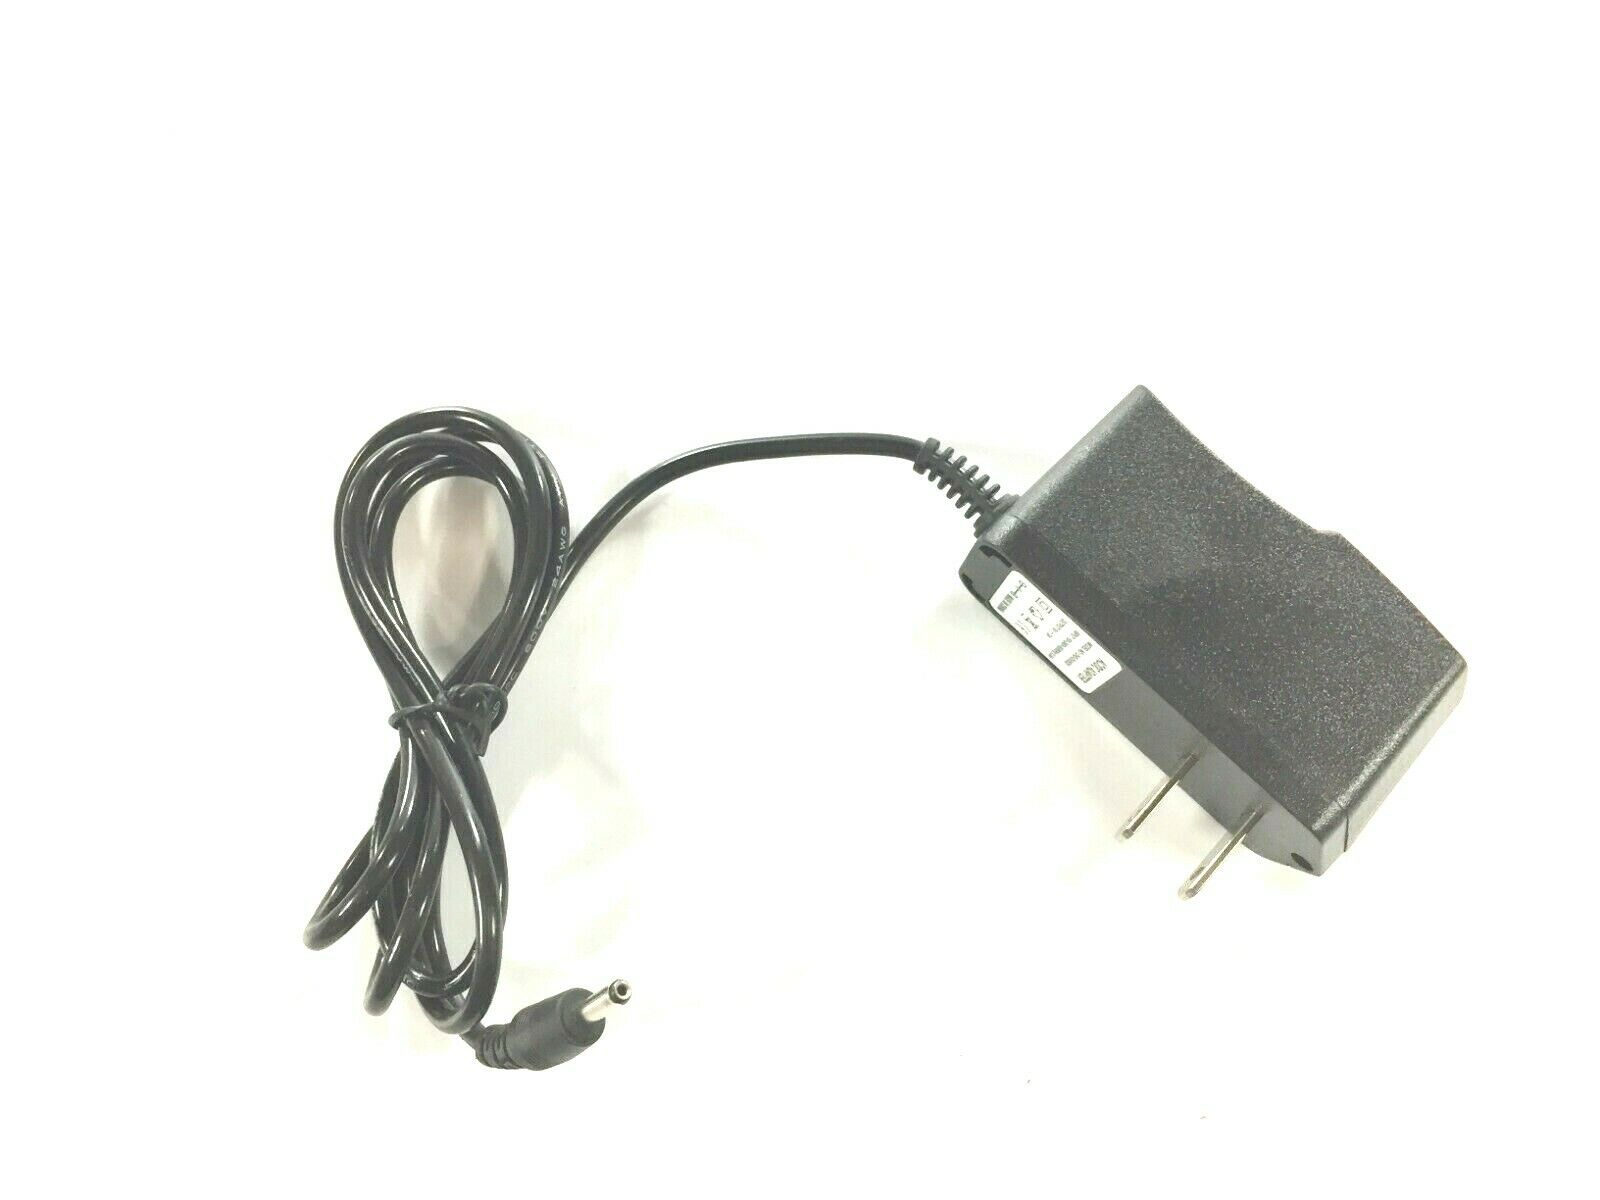 Ac/Dc Adapter Model CHD-DU0520 Input: 100-240V- 50/60Hz 0.5A OutPut 5V Dc 2A Type: Power Supply MPN: CHD-DU0520 Ou - Click Image to Close